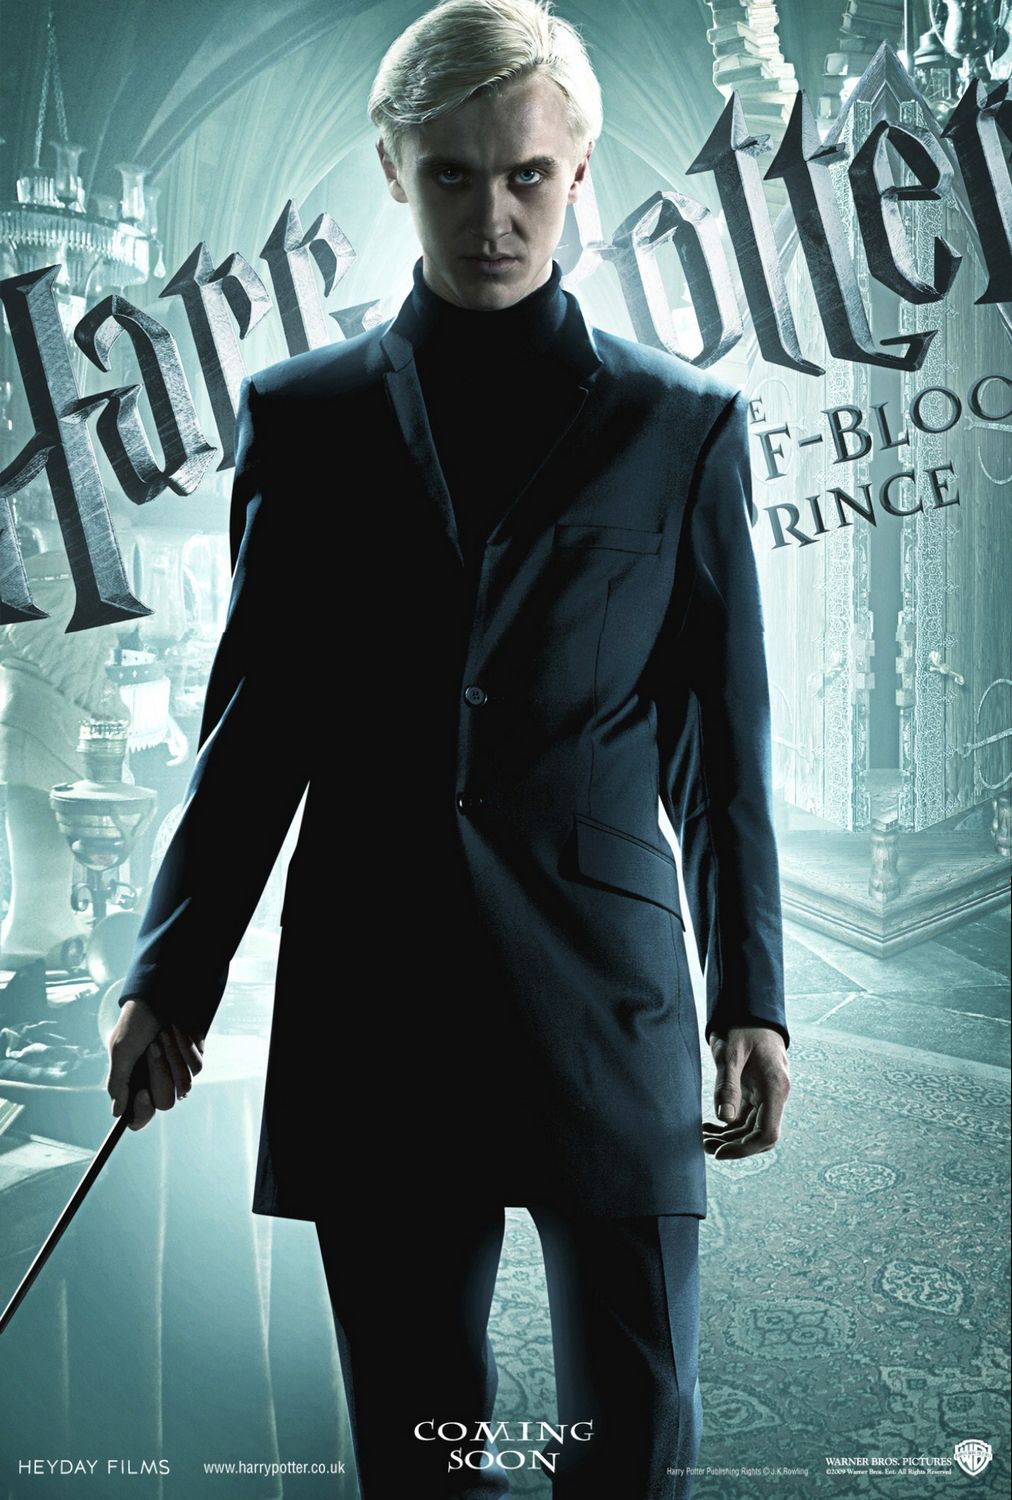 Постер - Гарри Поттер и Принц-полукровка: 1012x1500 / 236 Кб